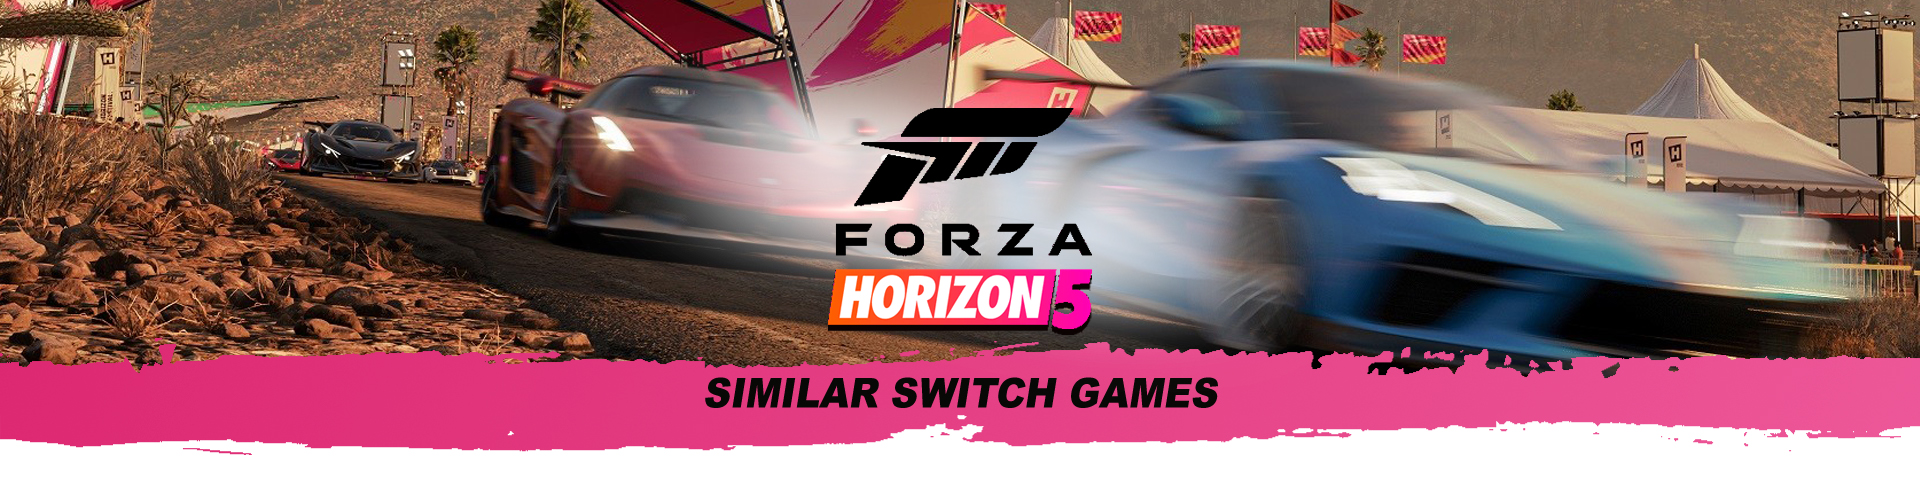 Juegos de Coches como Forza Horizon en la Switch